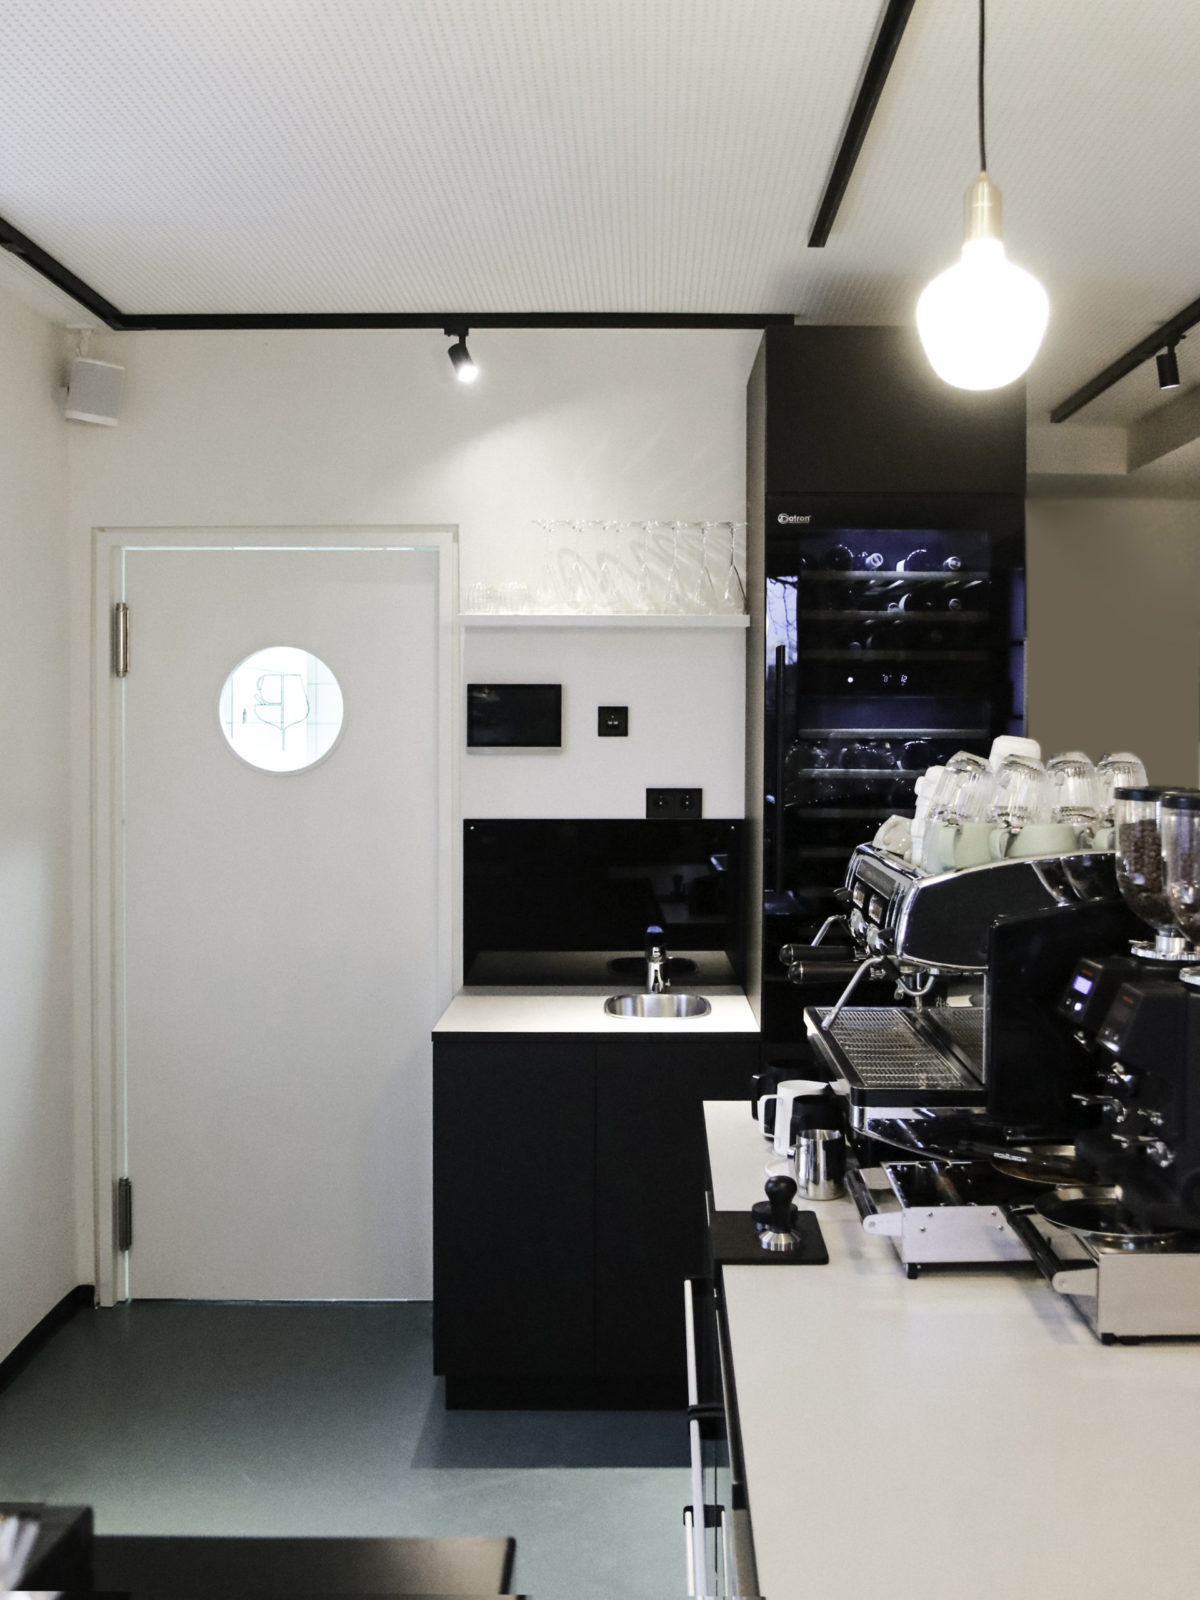 Innengestaltung, Cafe, Thekenbereich, Kühlschrank und Kaffeemaschine